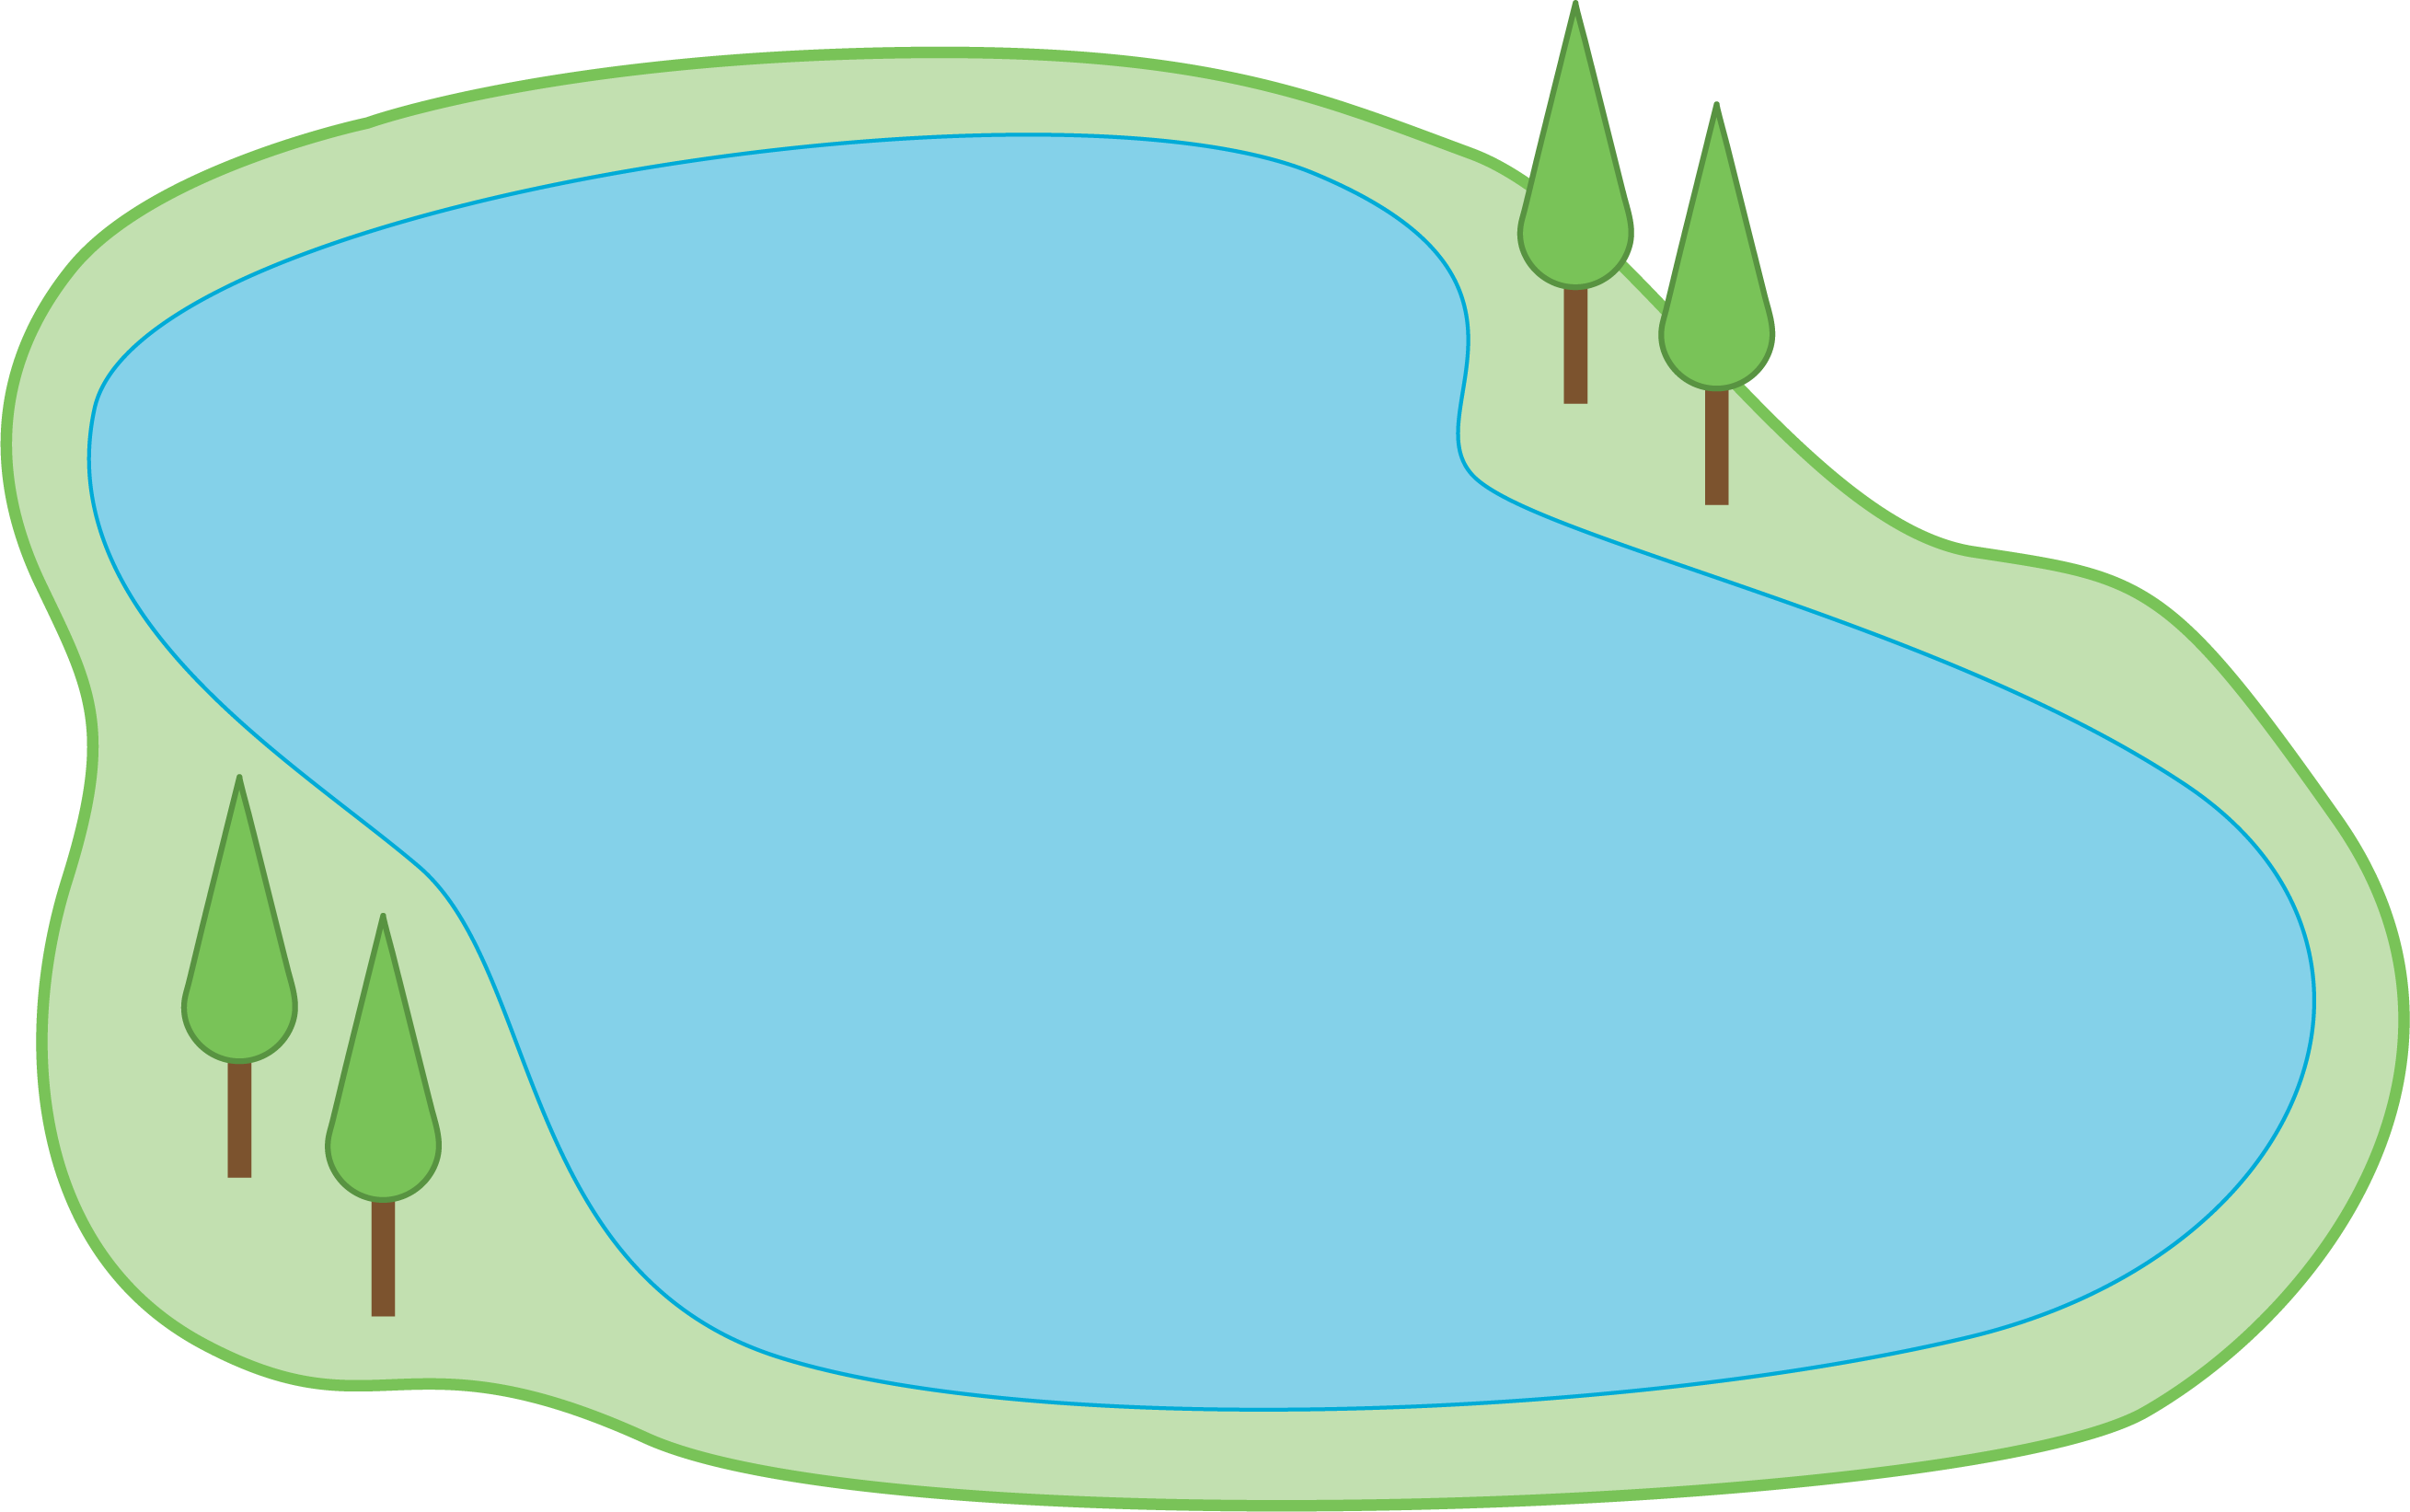 A lake.